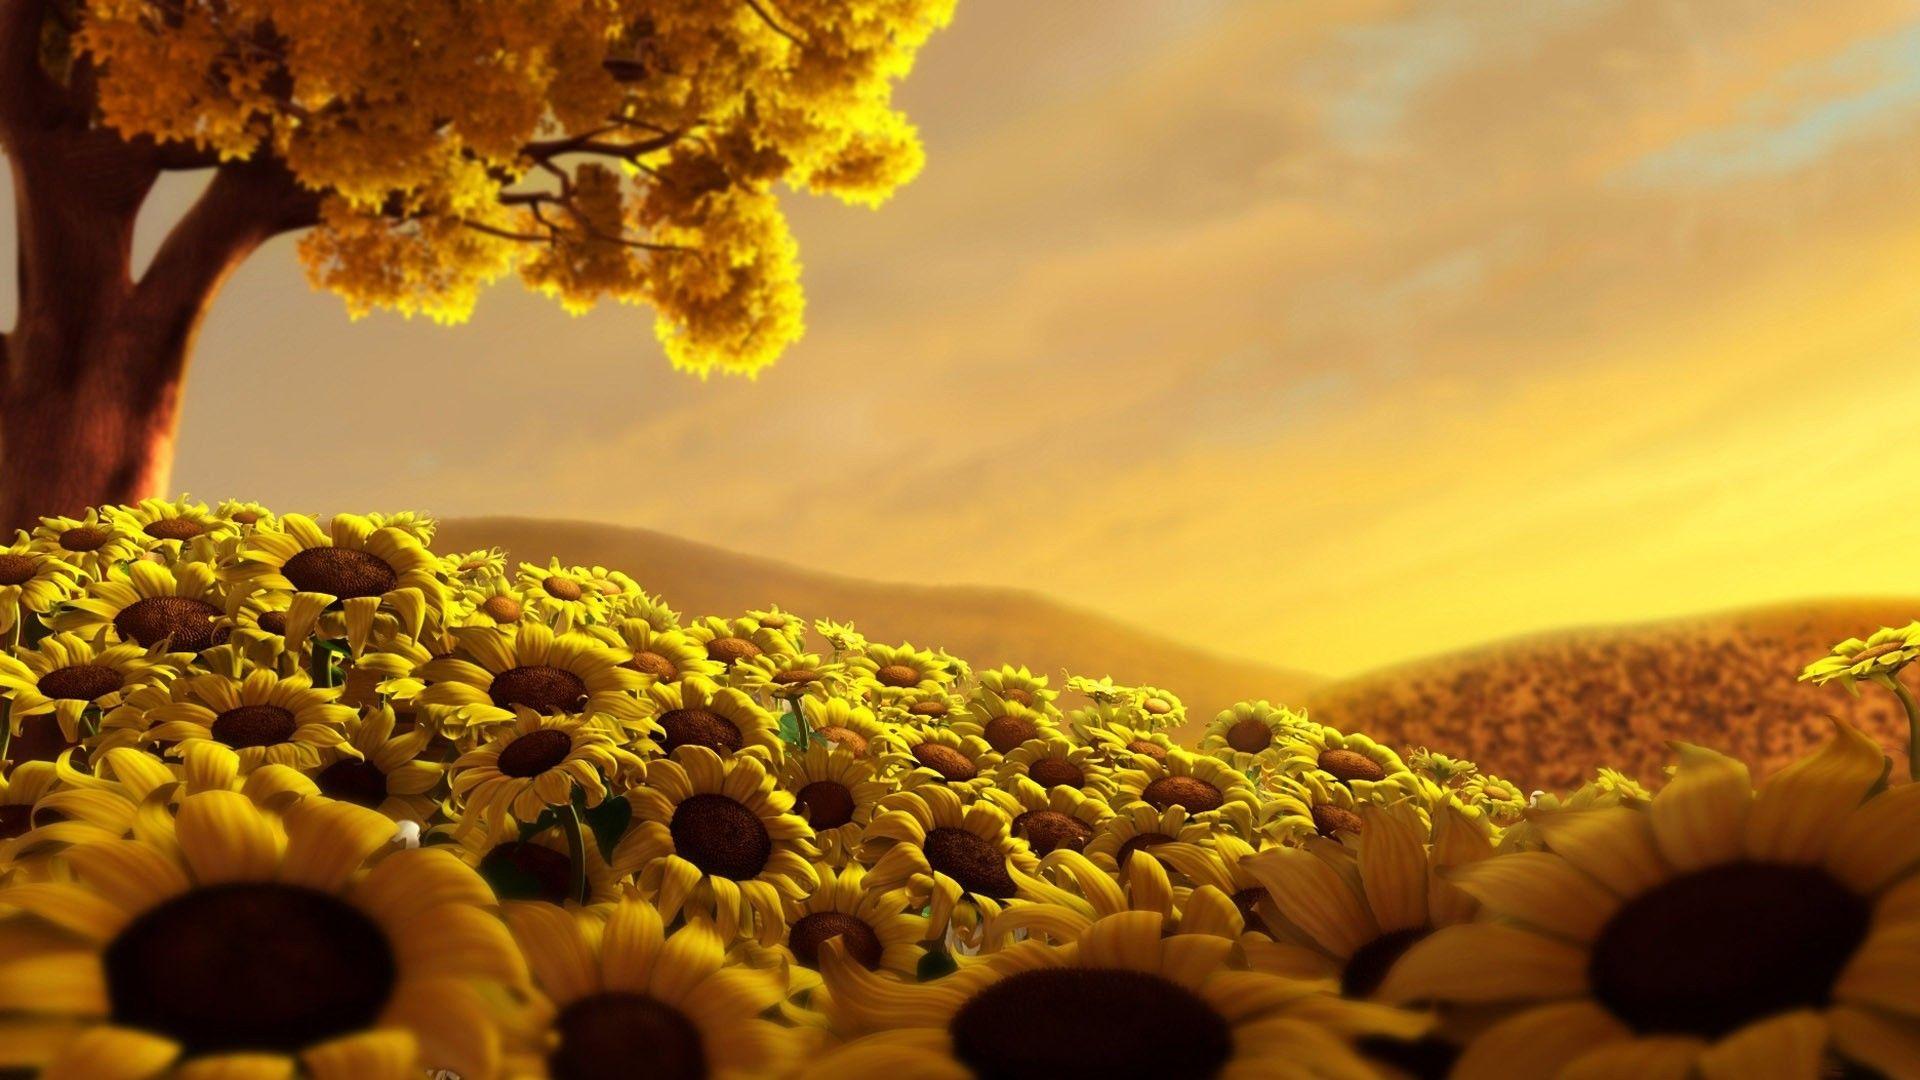 Tree Sunflower Field. Download HD Wallpaper